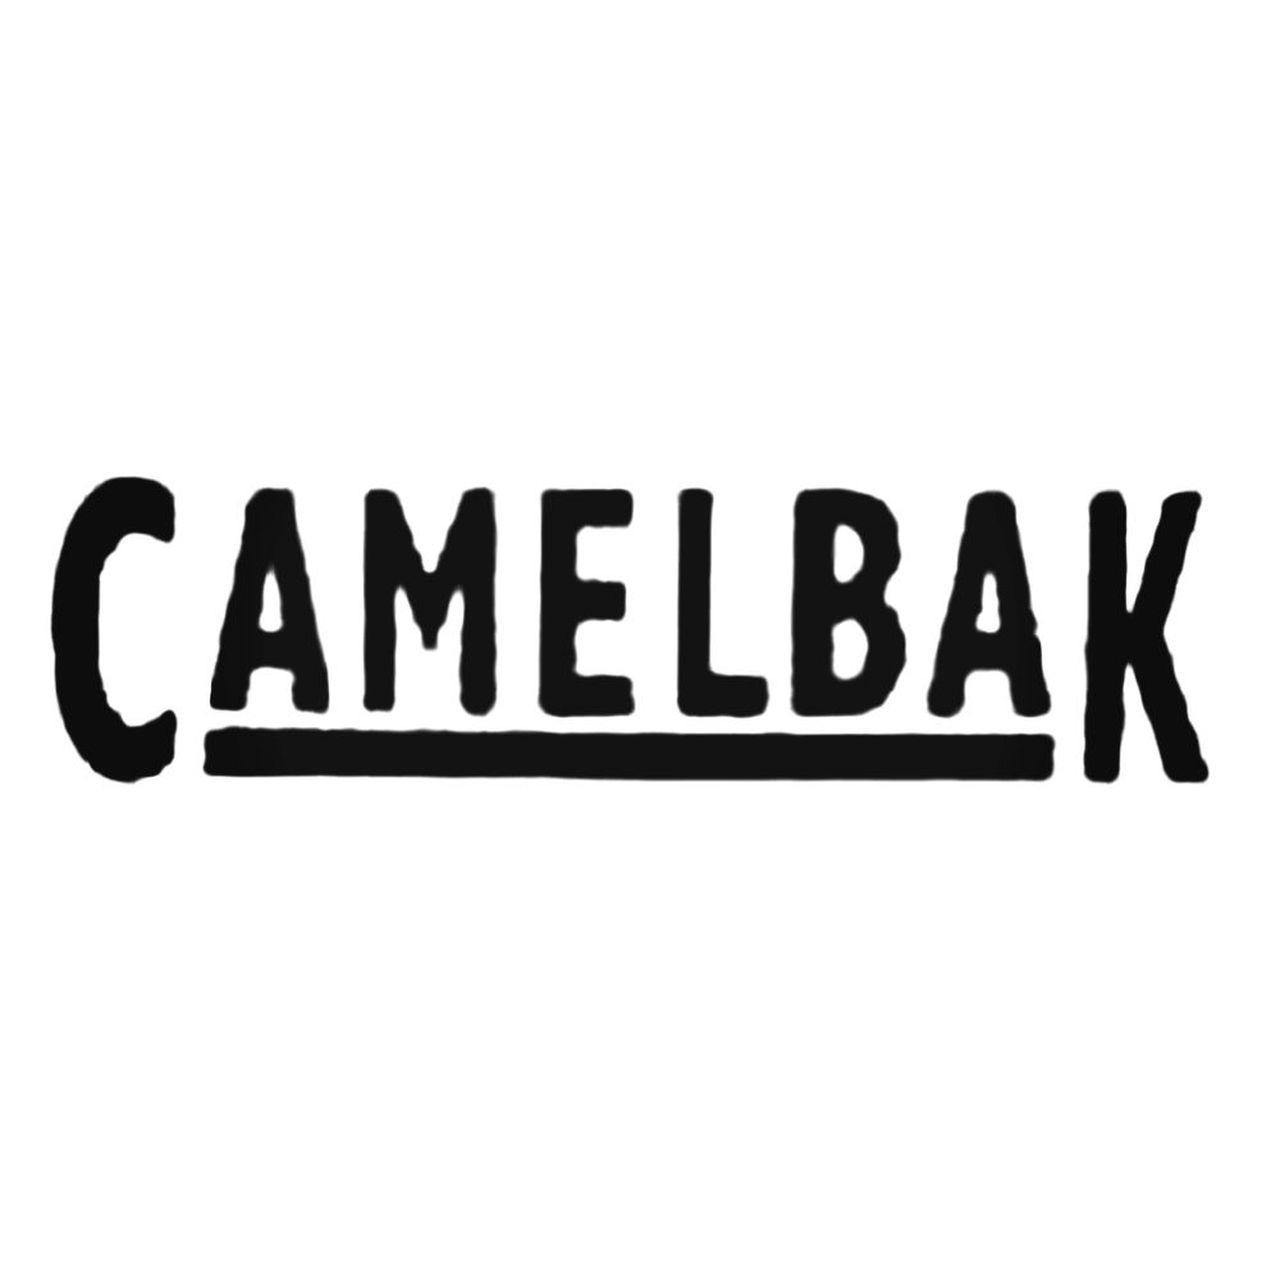 CamelBak Logo - Camelbak Logo Decal Sticker